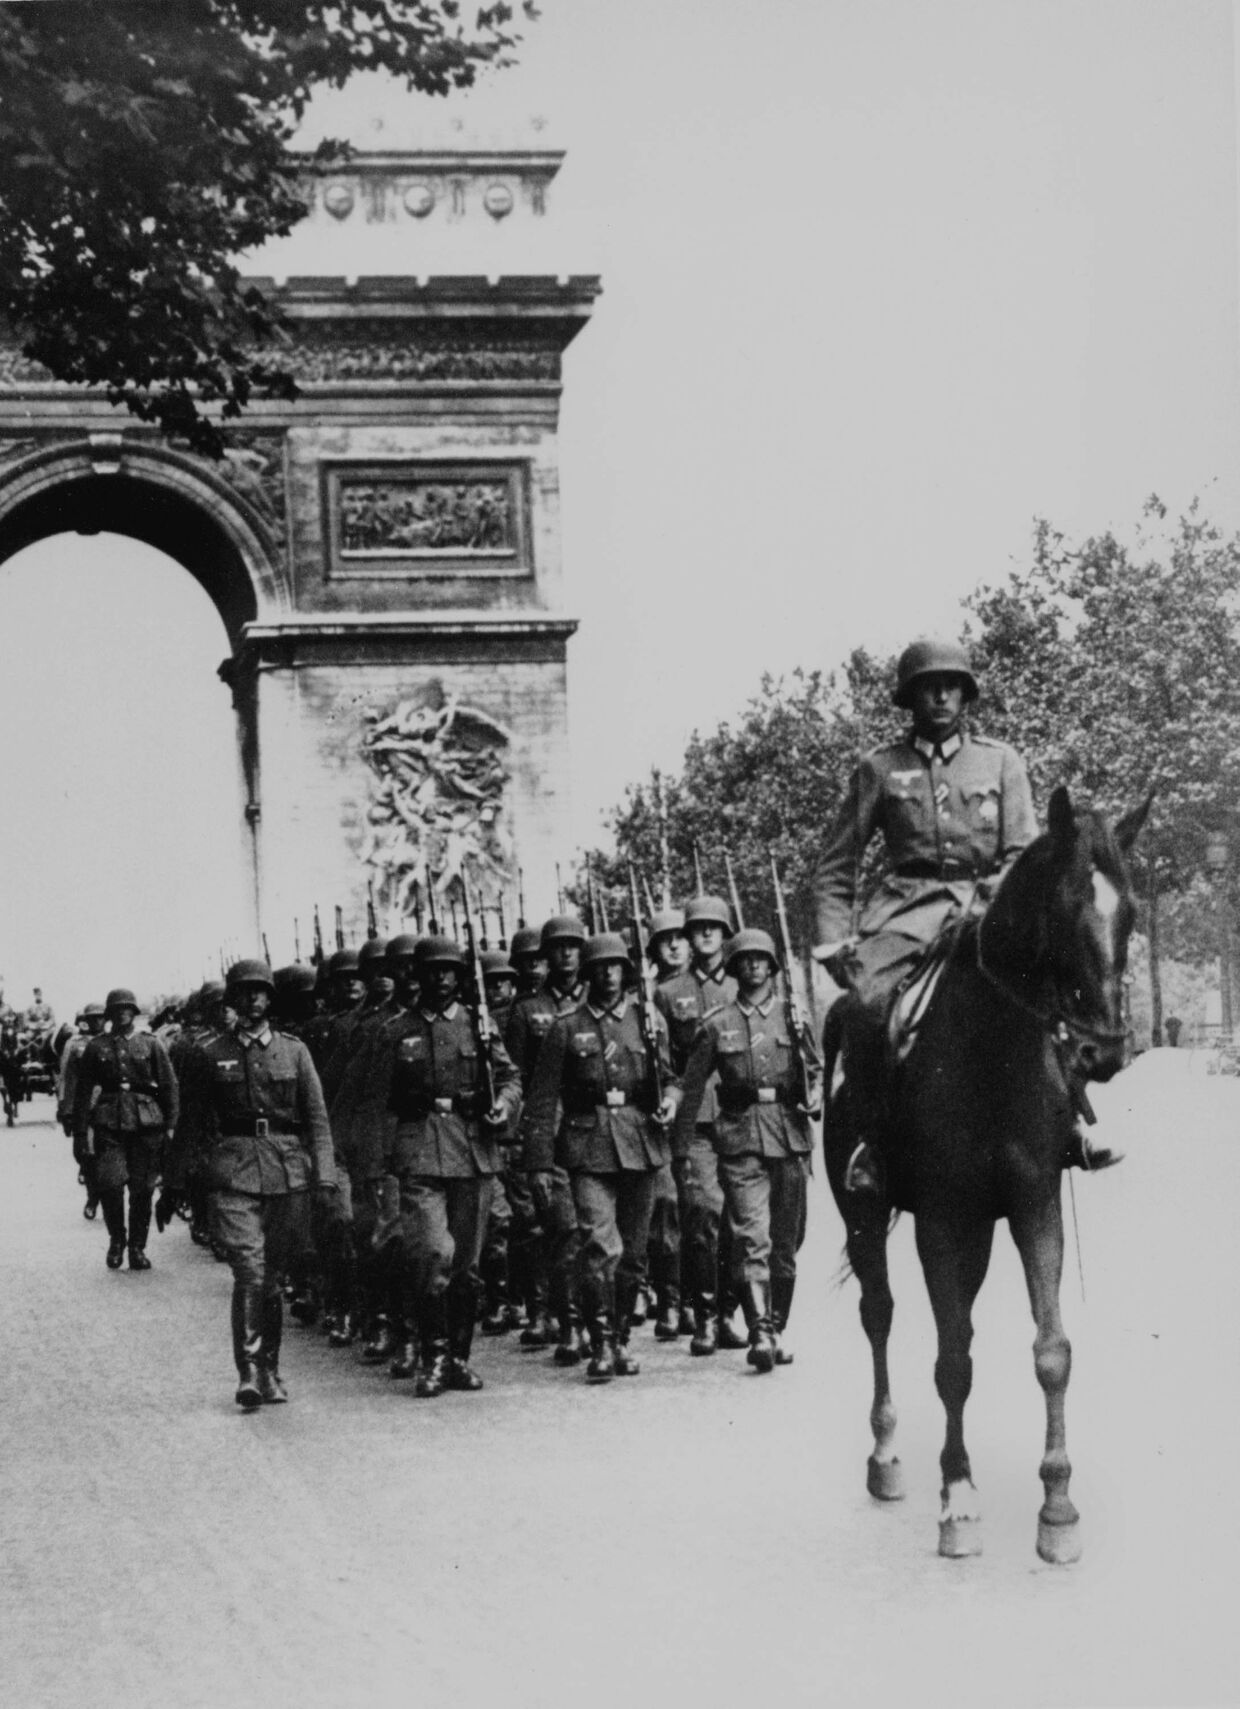 14 июня 1940. Немецкие войска маршируют на Елисейских Полях в Париже, Франция